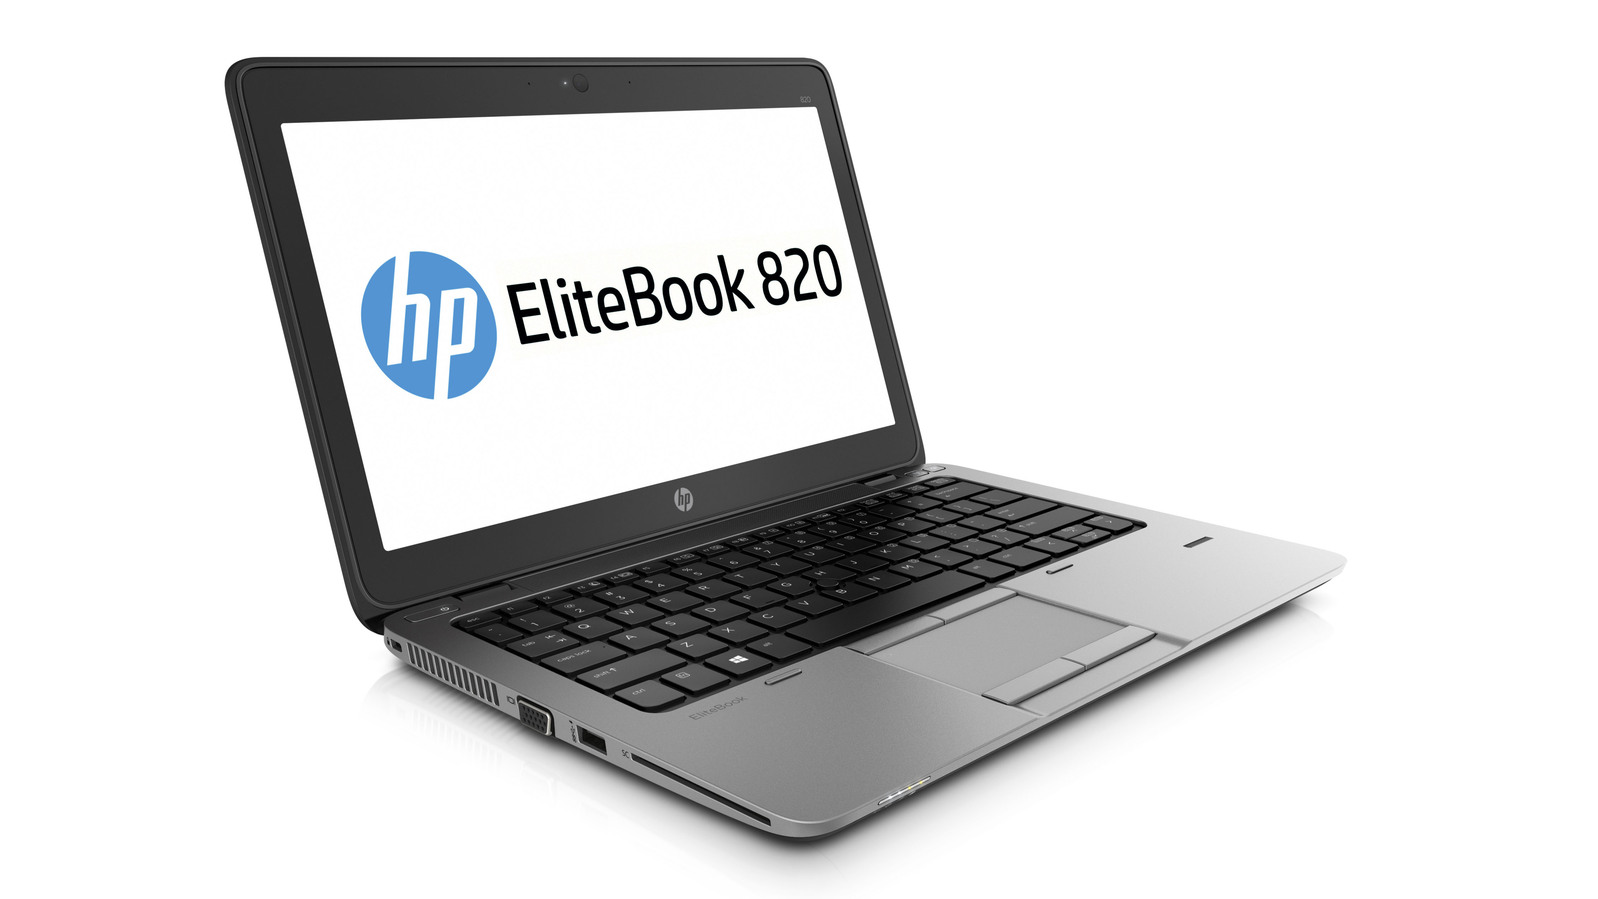 HP EliteBook 820 G2 Intel i5 5300U 2.30GHz 4GB RAM 256GB SSD 12.5" NO OS Image 1